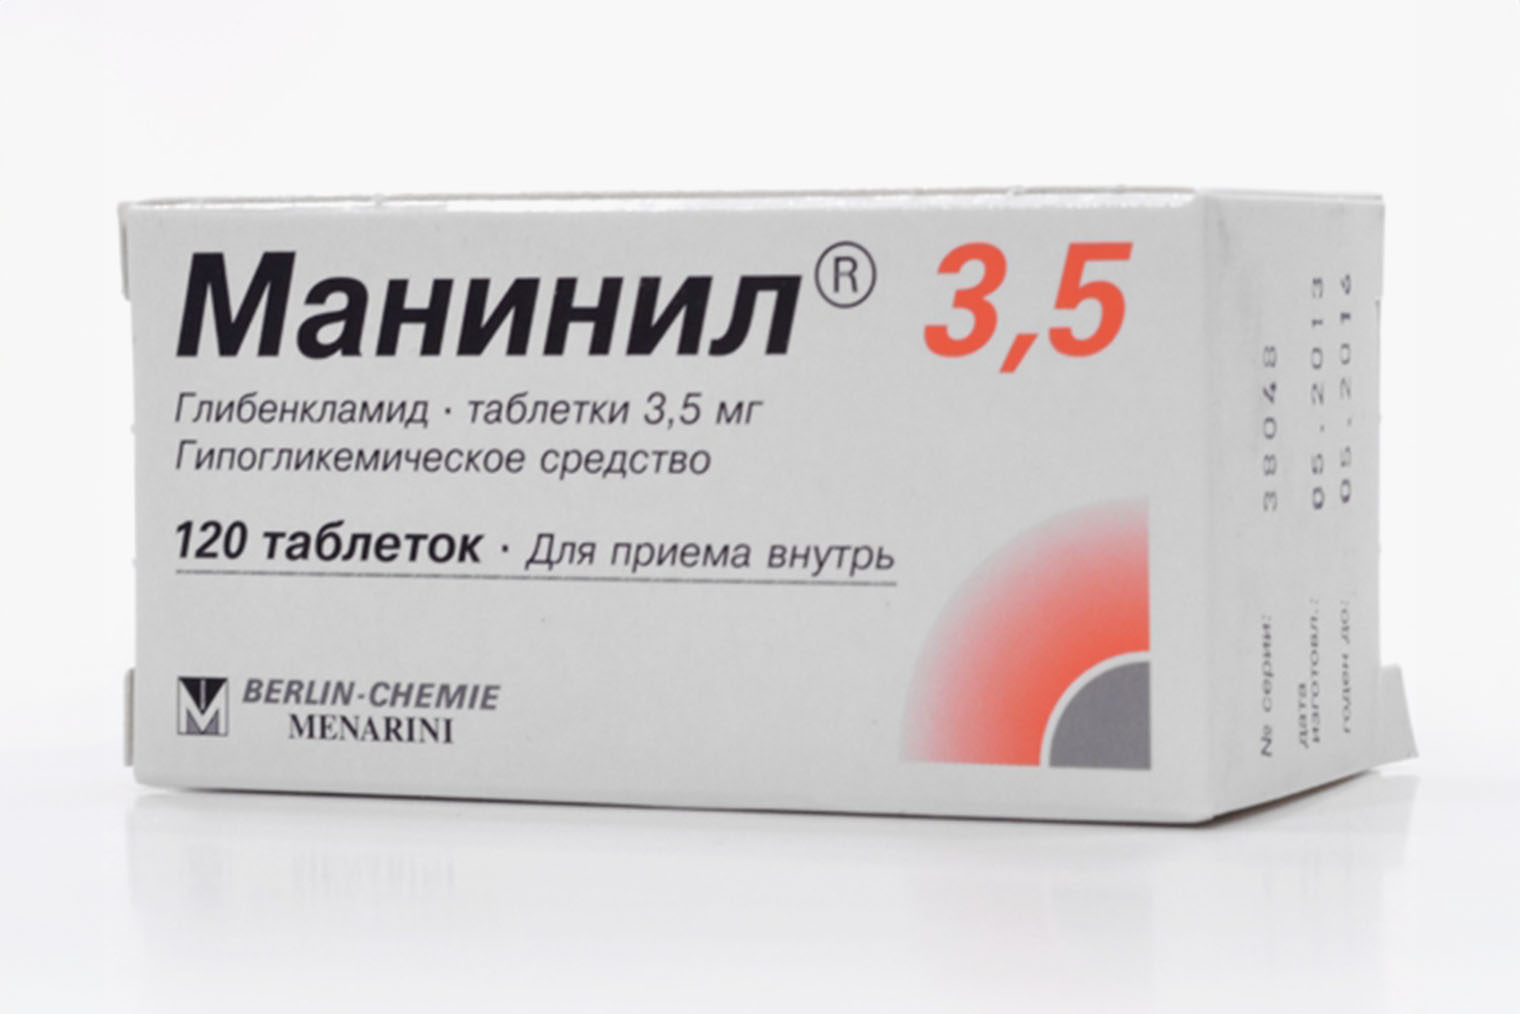 Немецкий препарат с глибенкламидом. Источник: eapteka.ru